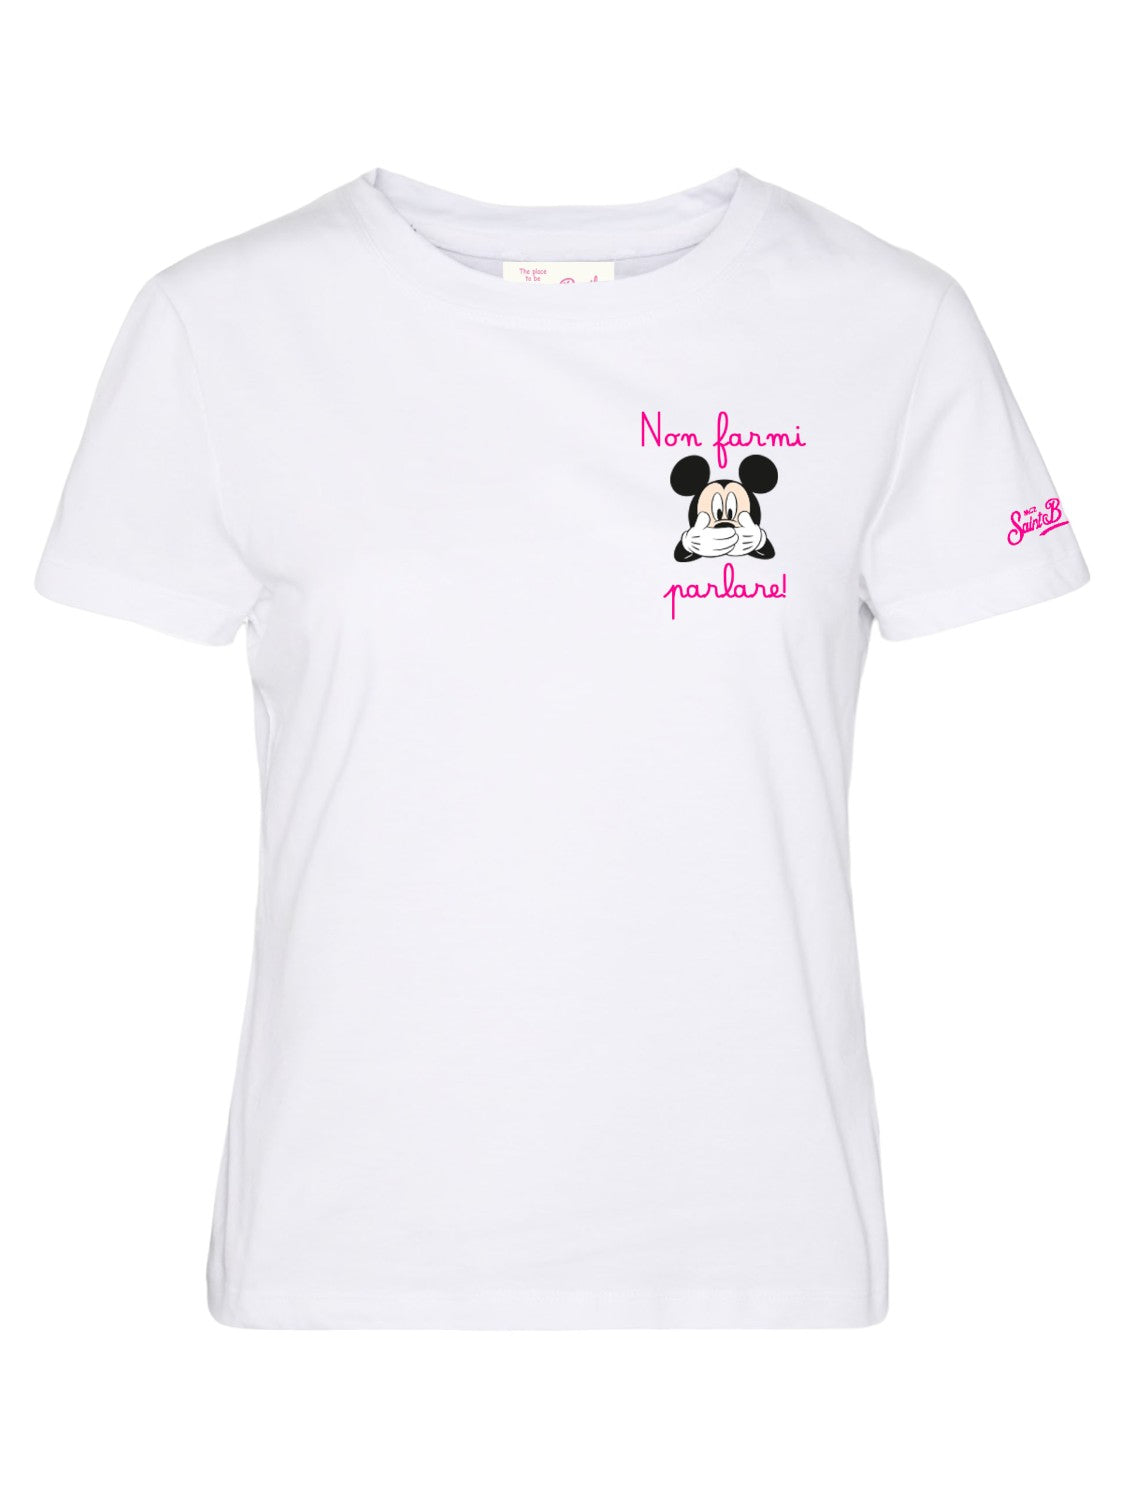 T-shirt Saint Barth in Cotone con Stampa "Non farmi parlare" e Mickey Mouse-Mc2 Saint Barth-T-shirt-Vittorio Citro Boutique